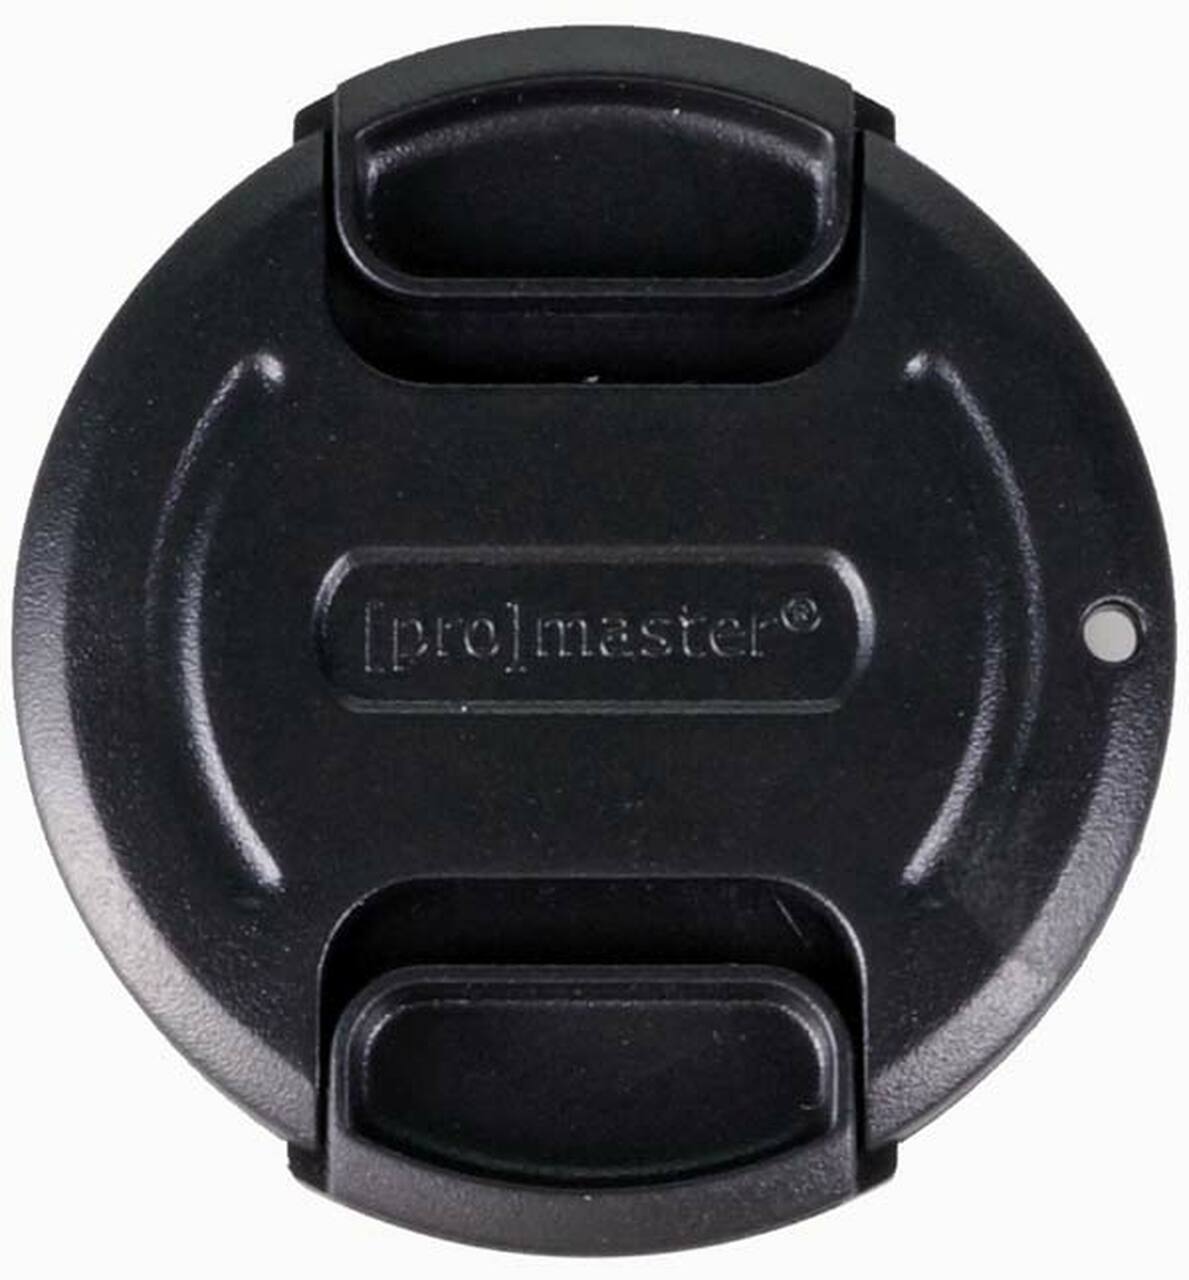 Promaster 4557 58mm Lens Cap